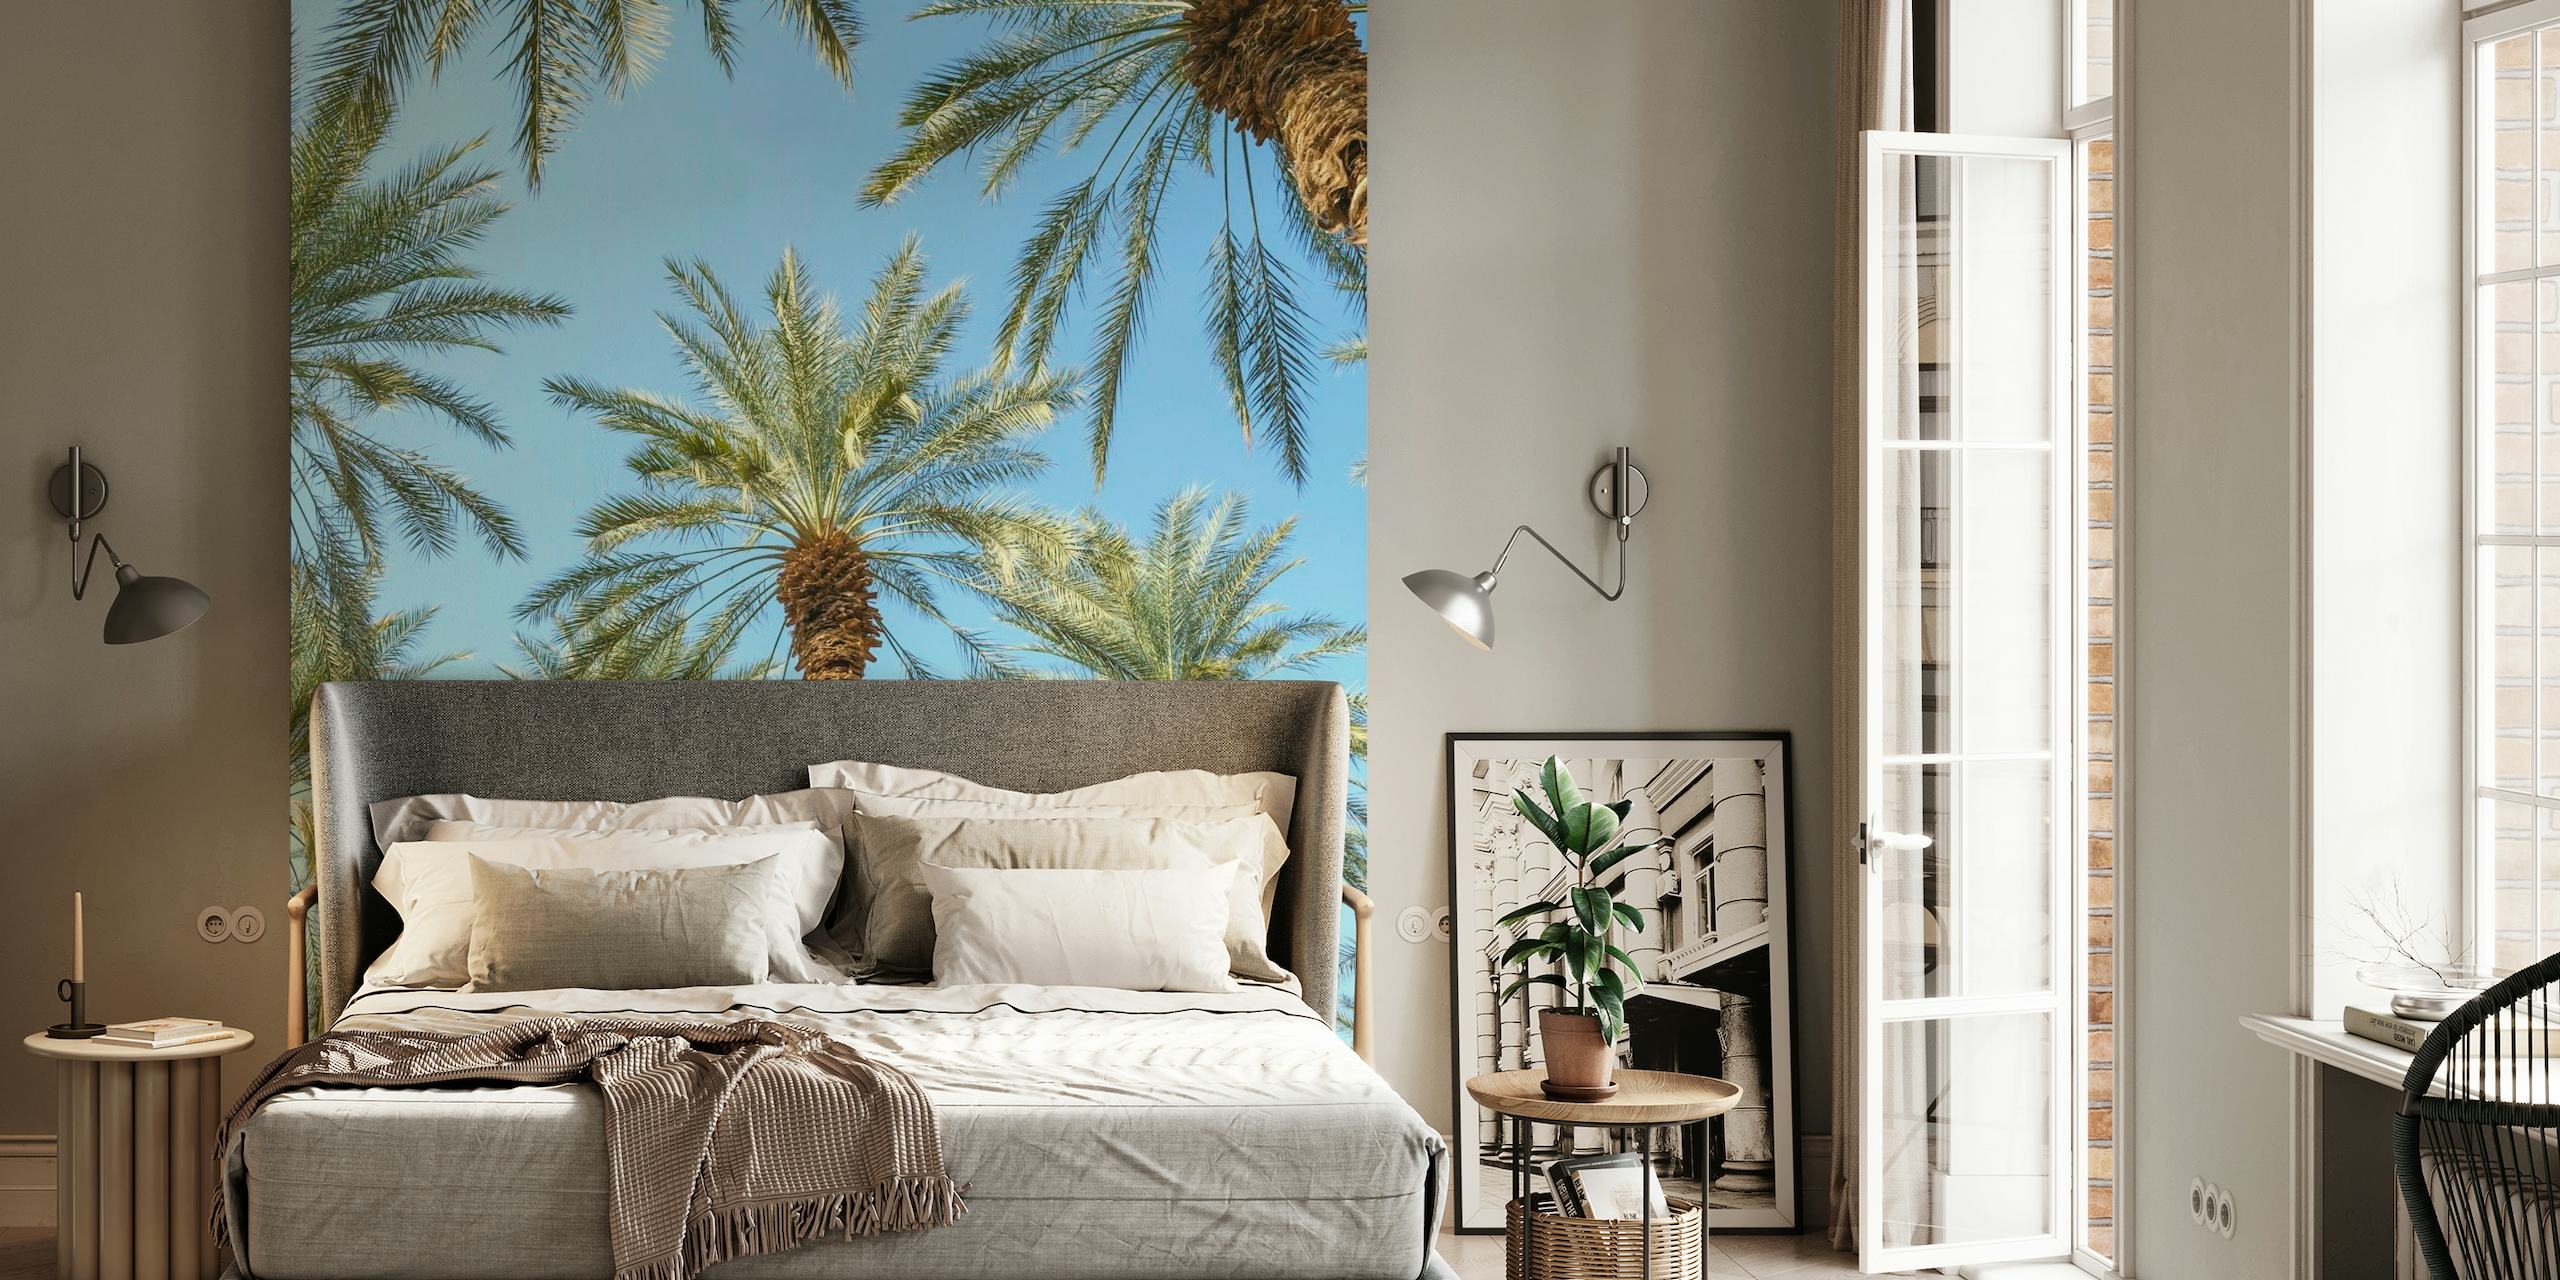 Fotomural vinílico de palmeiras tropicais para um ambiente sereno de decoração de casa.